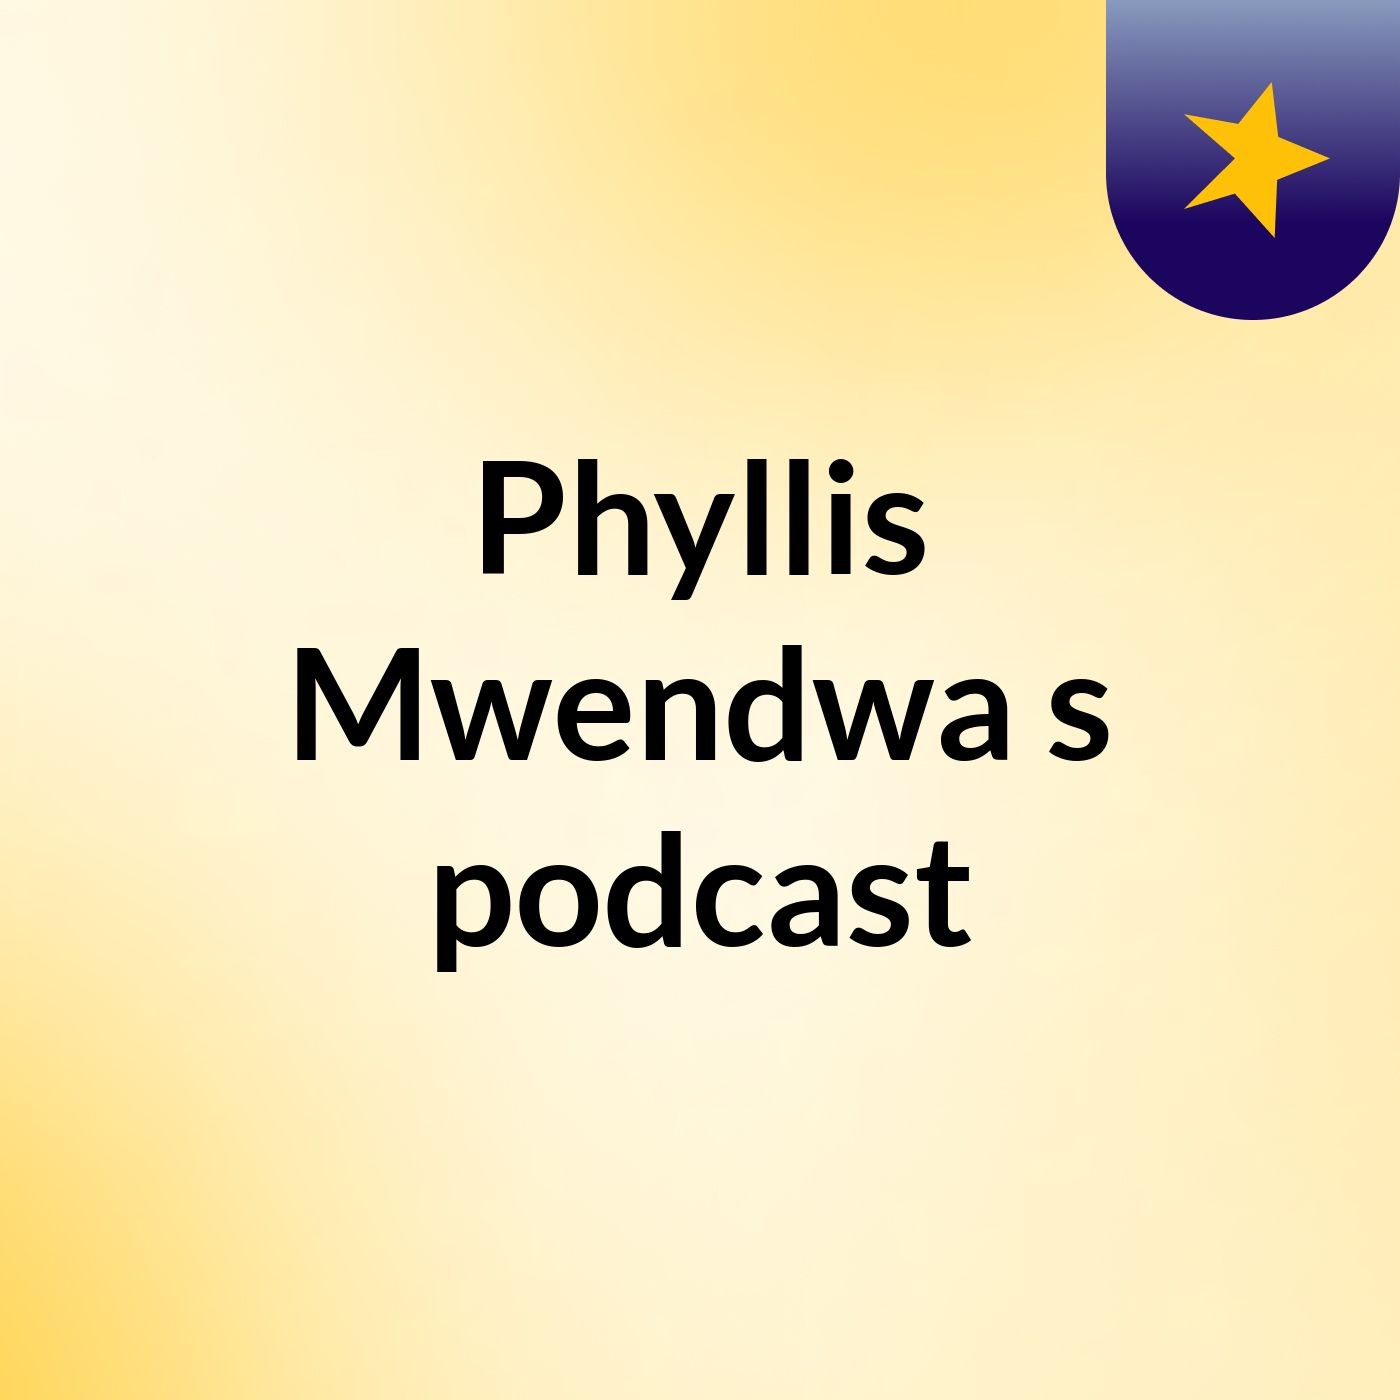 Phyllis Mwendwa's podcast